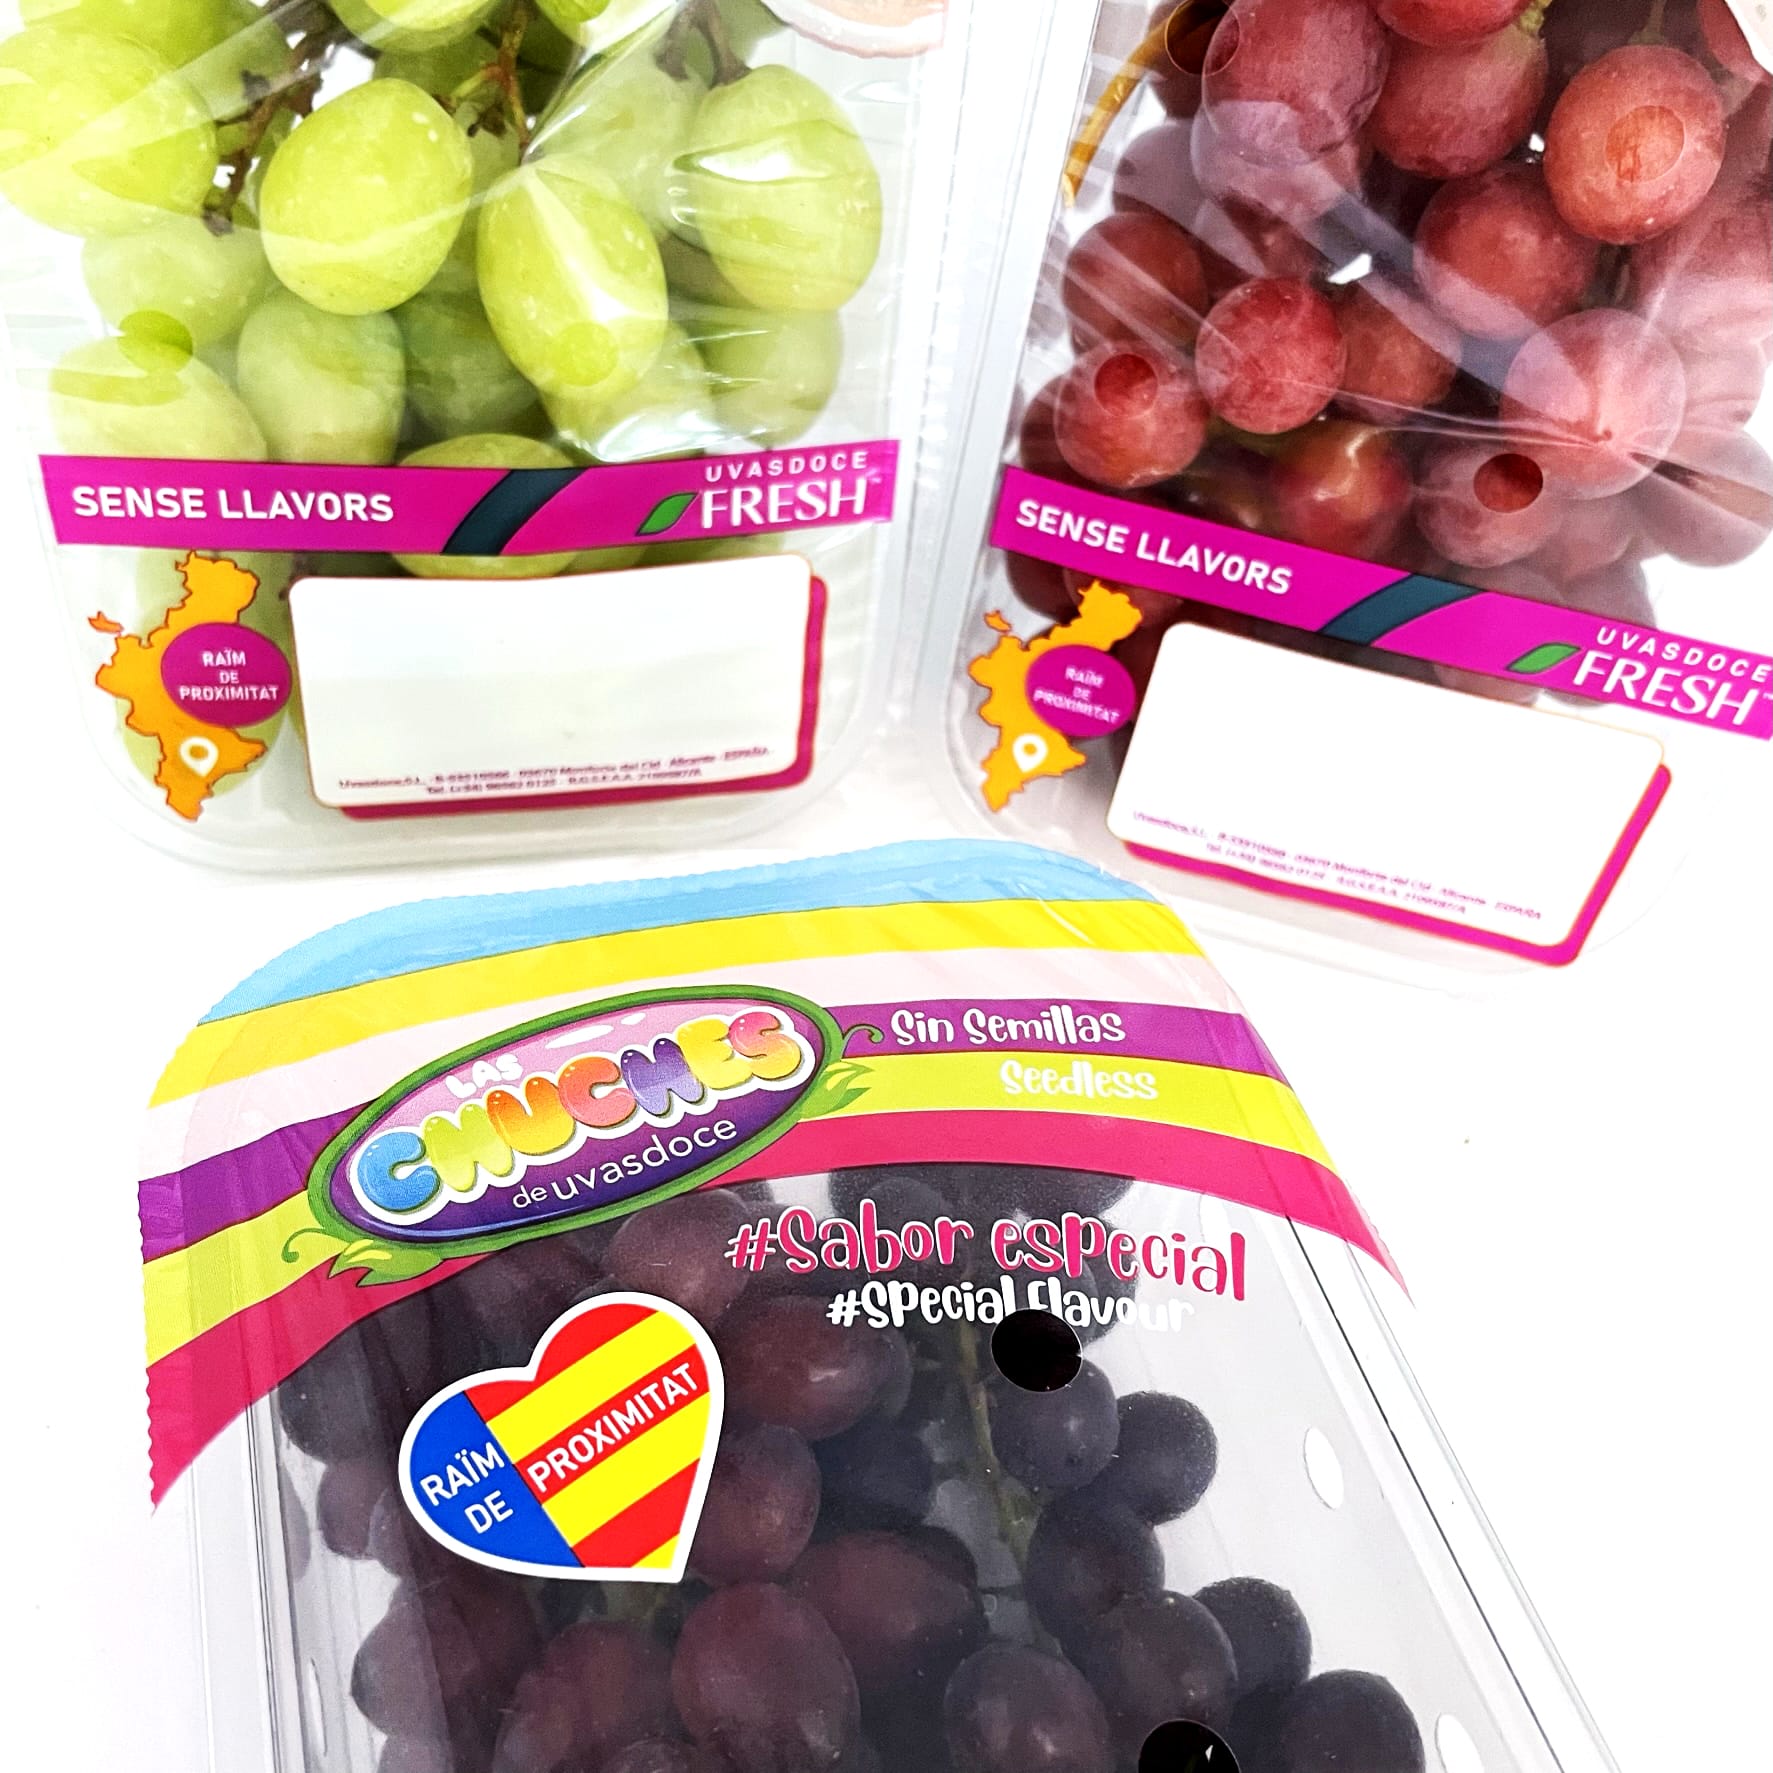 Mirian Cutillas (UVAS DOCE):”Que la uva no tenga semillas facilita el consumo”